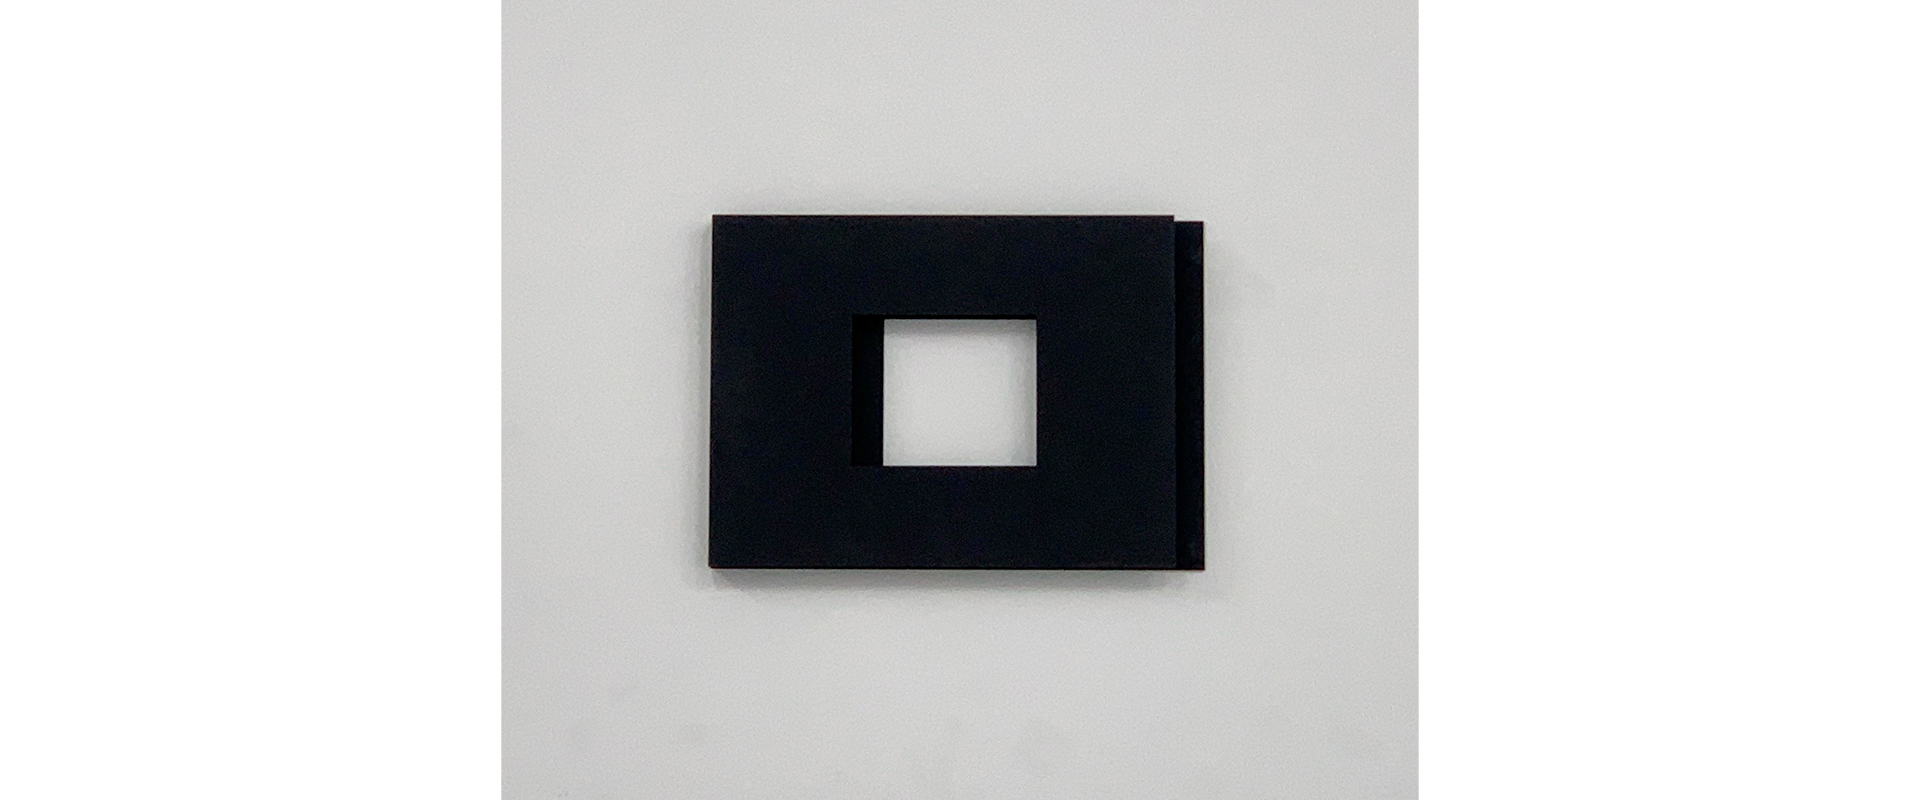 Passepatout square (black) – 2010, Stahl, Lack, 32 x 43 cm